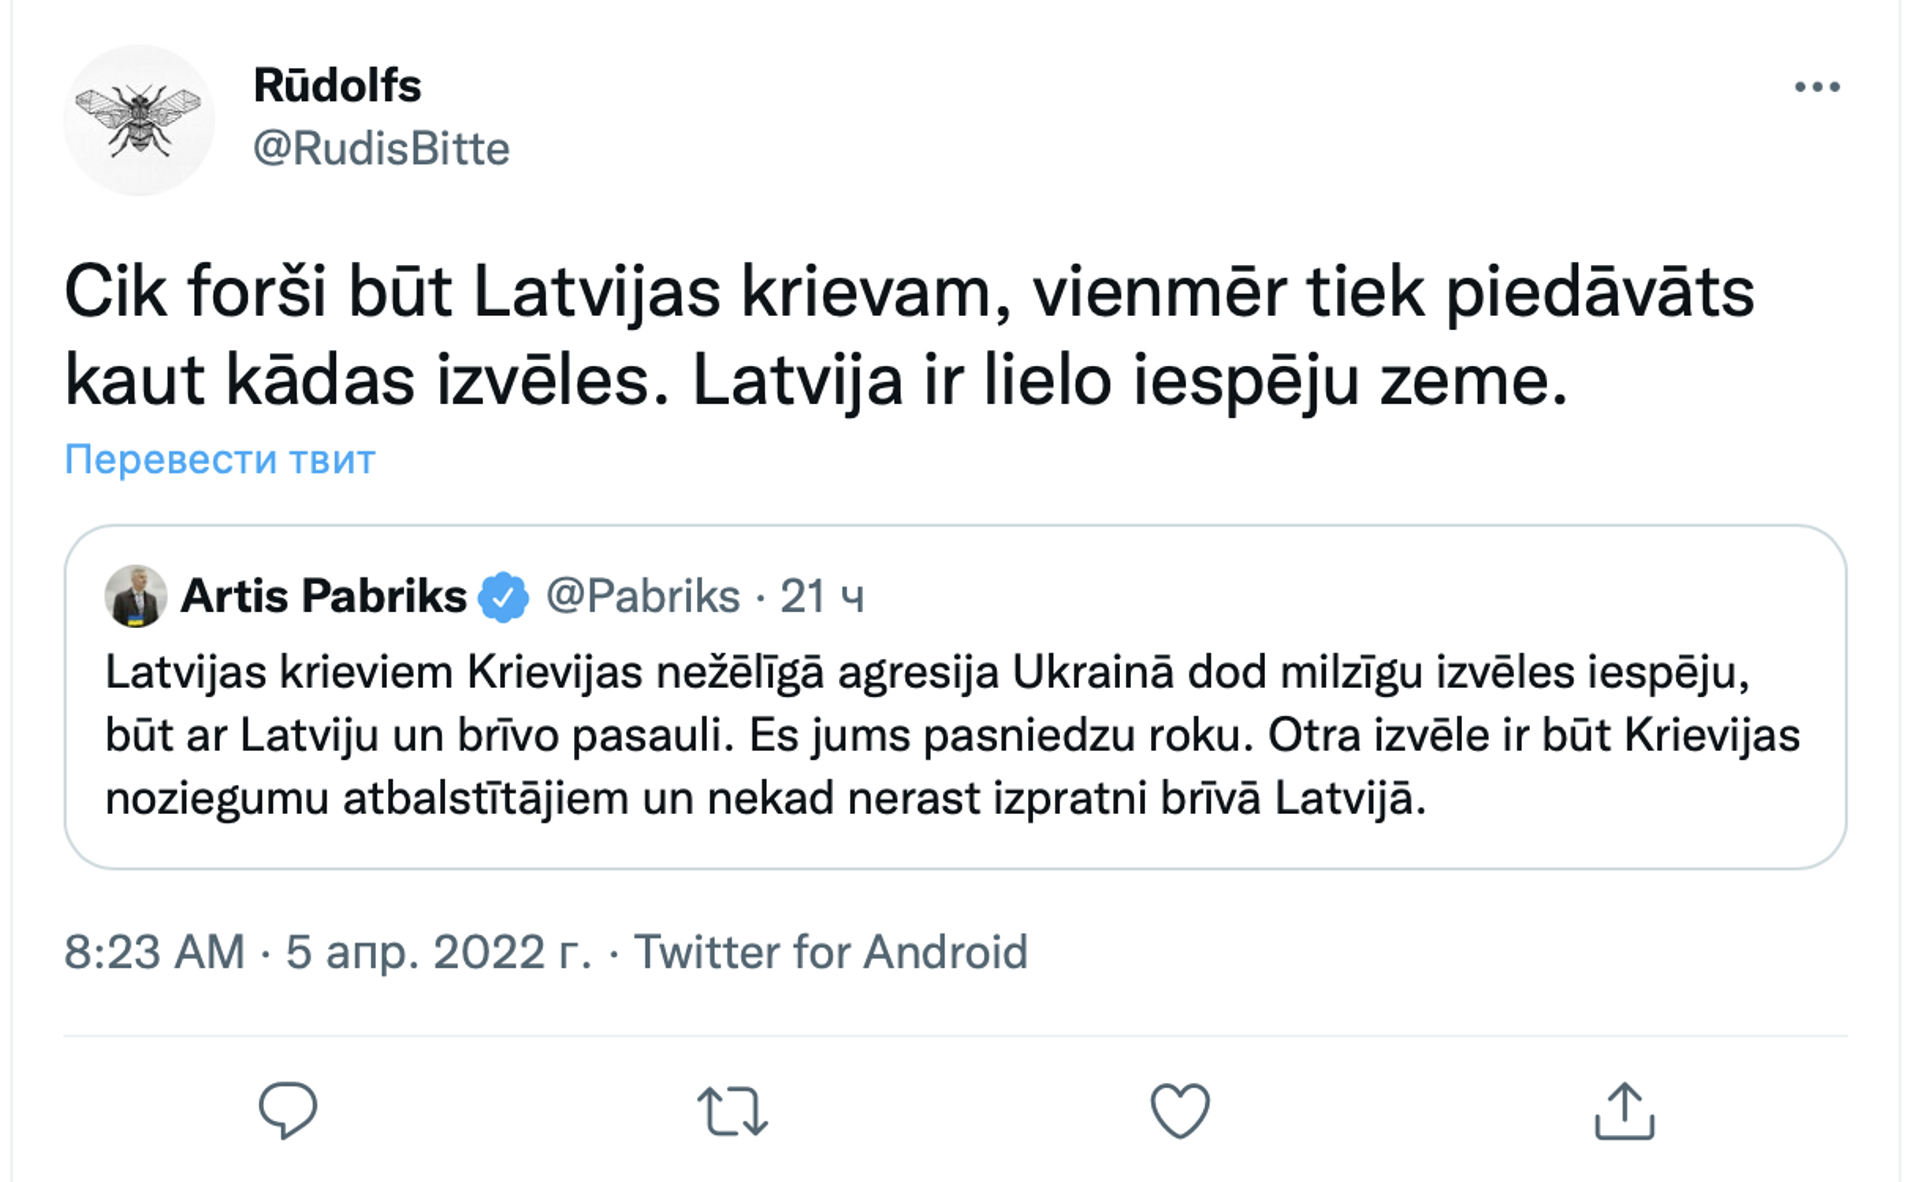 Скриншот поста в Twitter  - Sputnik Латвия, 1920, 05.04.2022